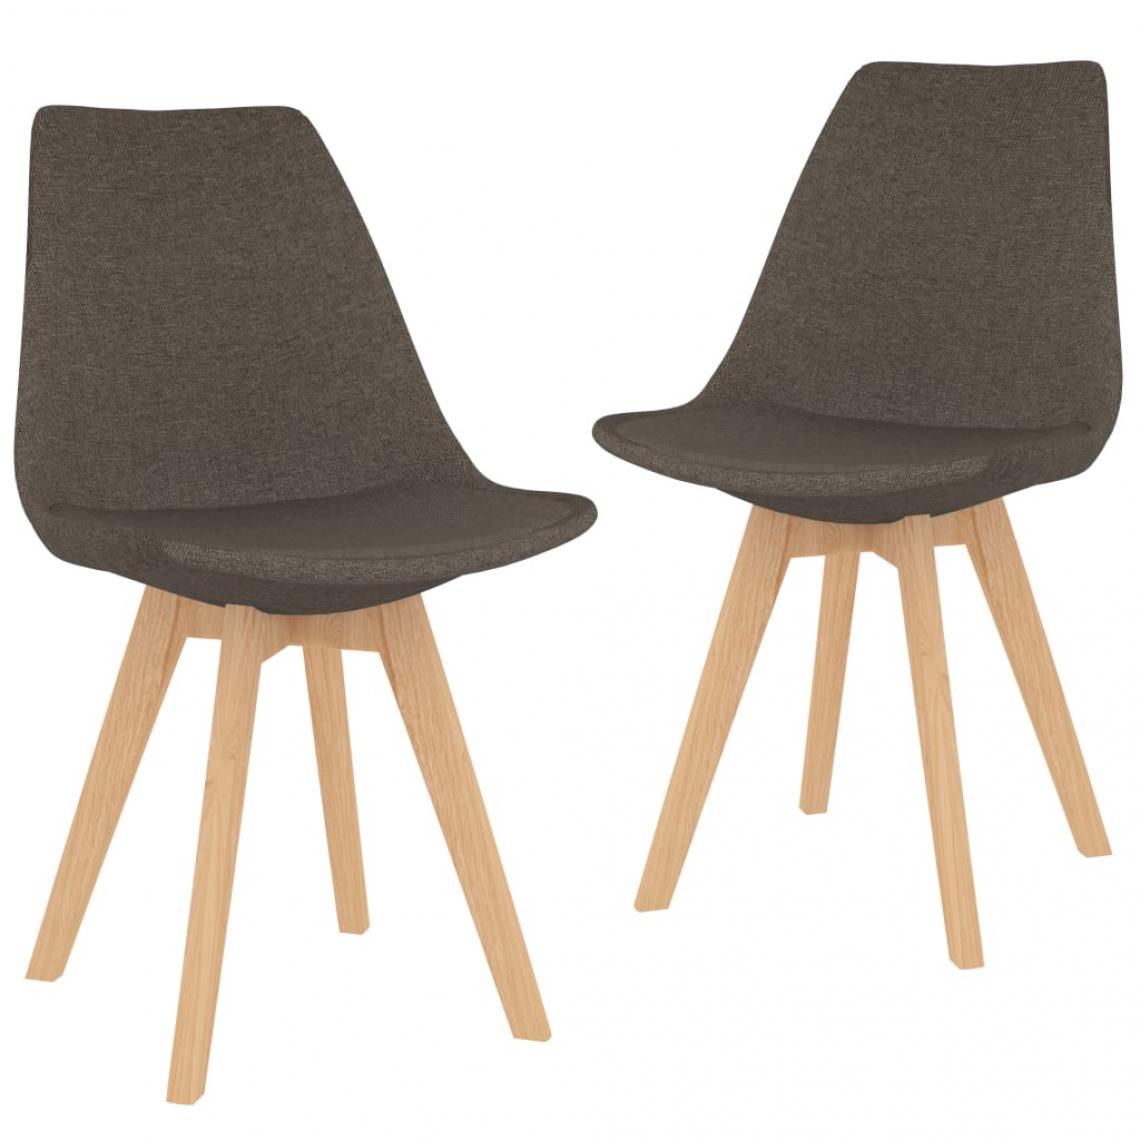 Decoshop26 - Lot de 2 chaises de salle à manger cuisine design moderne tissu taupe CDS021061 - Chaises